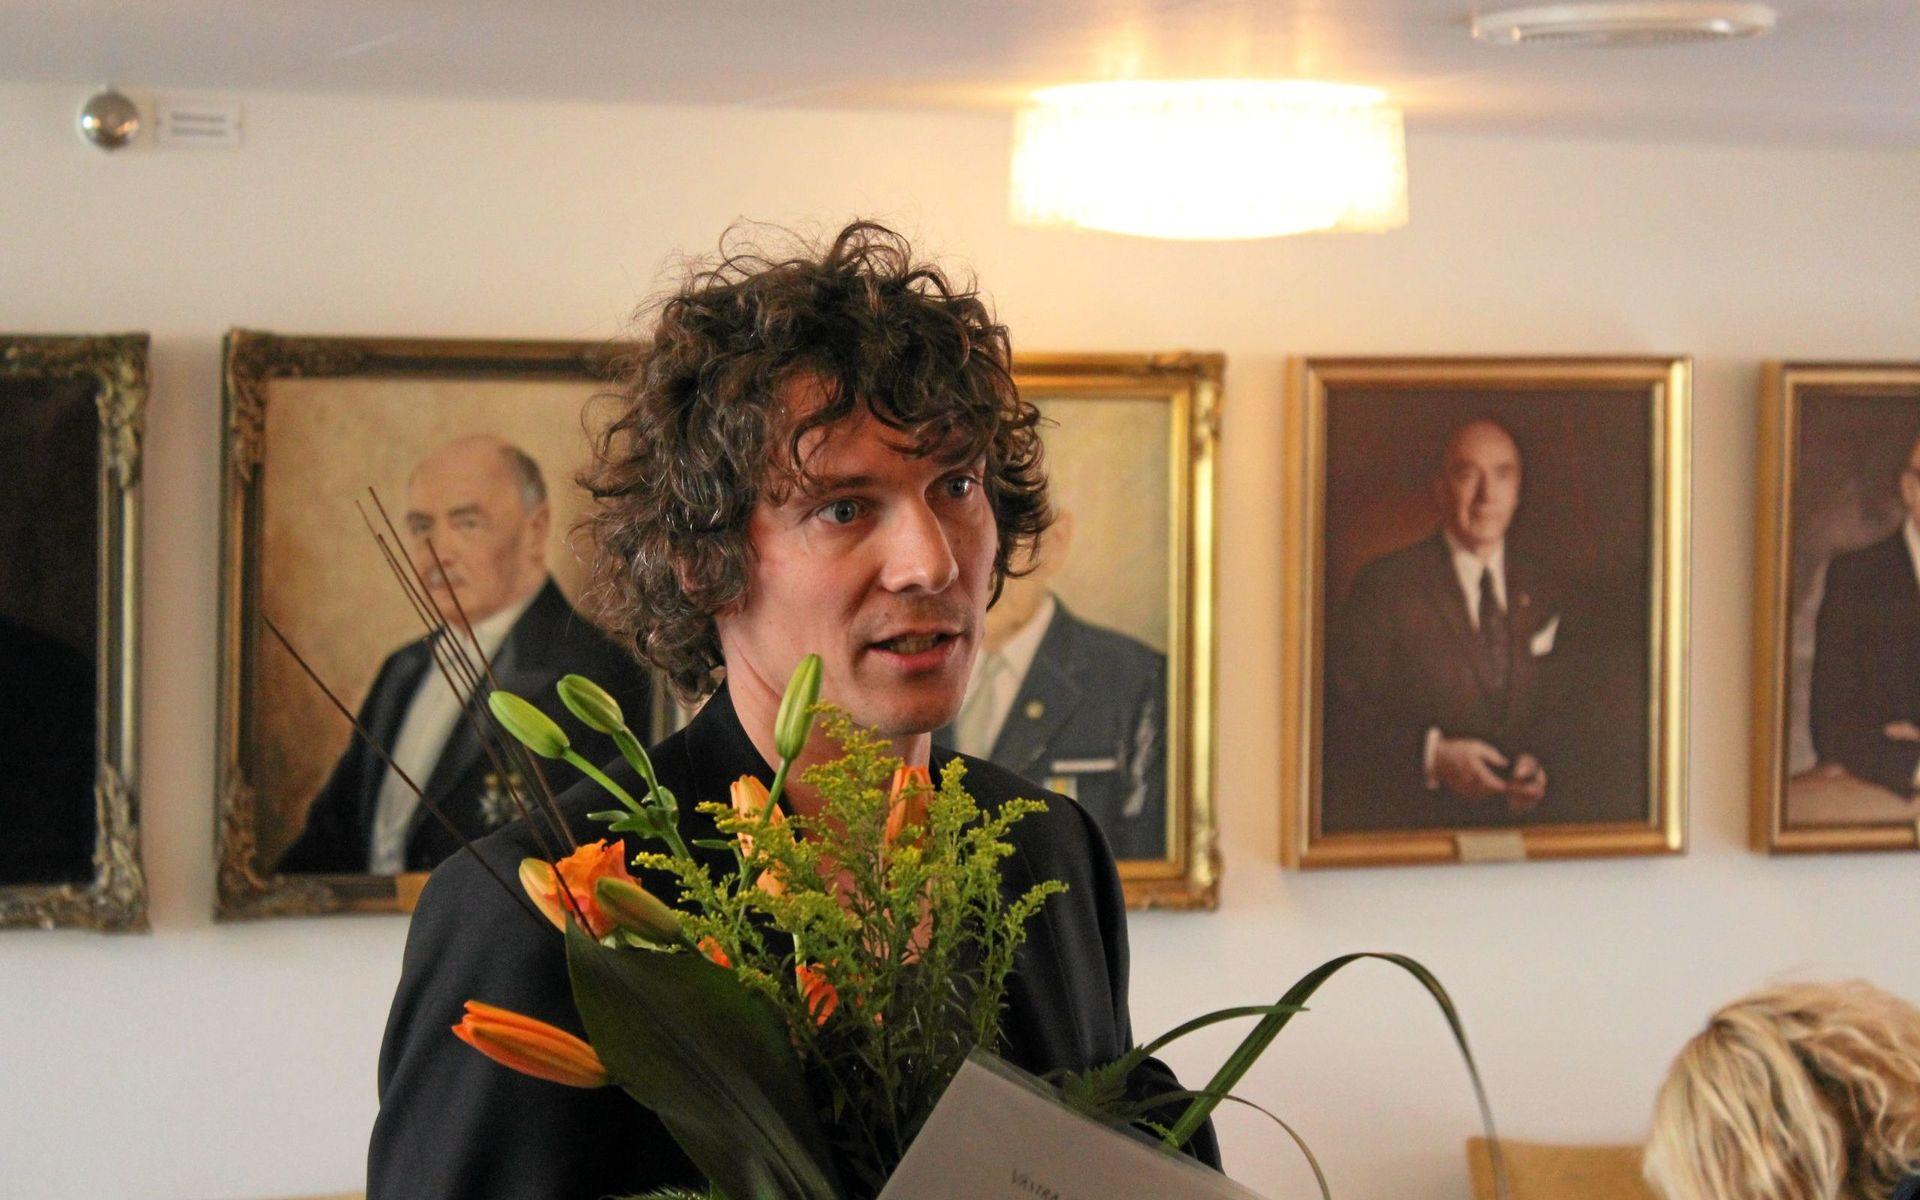 Håkan Hellström får regionens kulturpris 2013. Här efter prisutdelningen utanför sessionssalen med porträtten på Vänersborgs tidigare kommunfullmäkitge ordförande i bakgrunden.